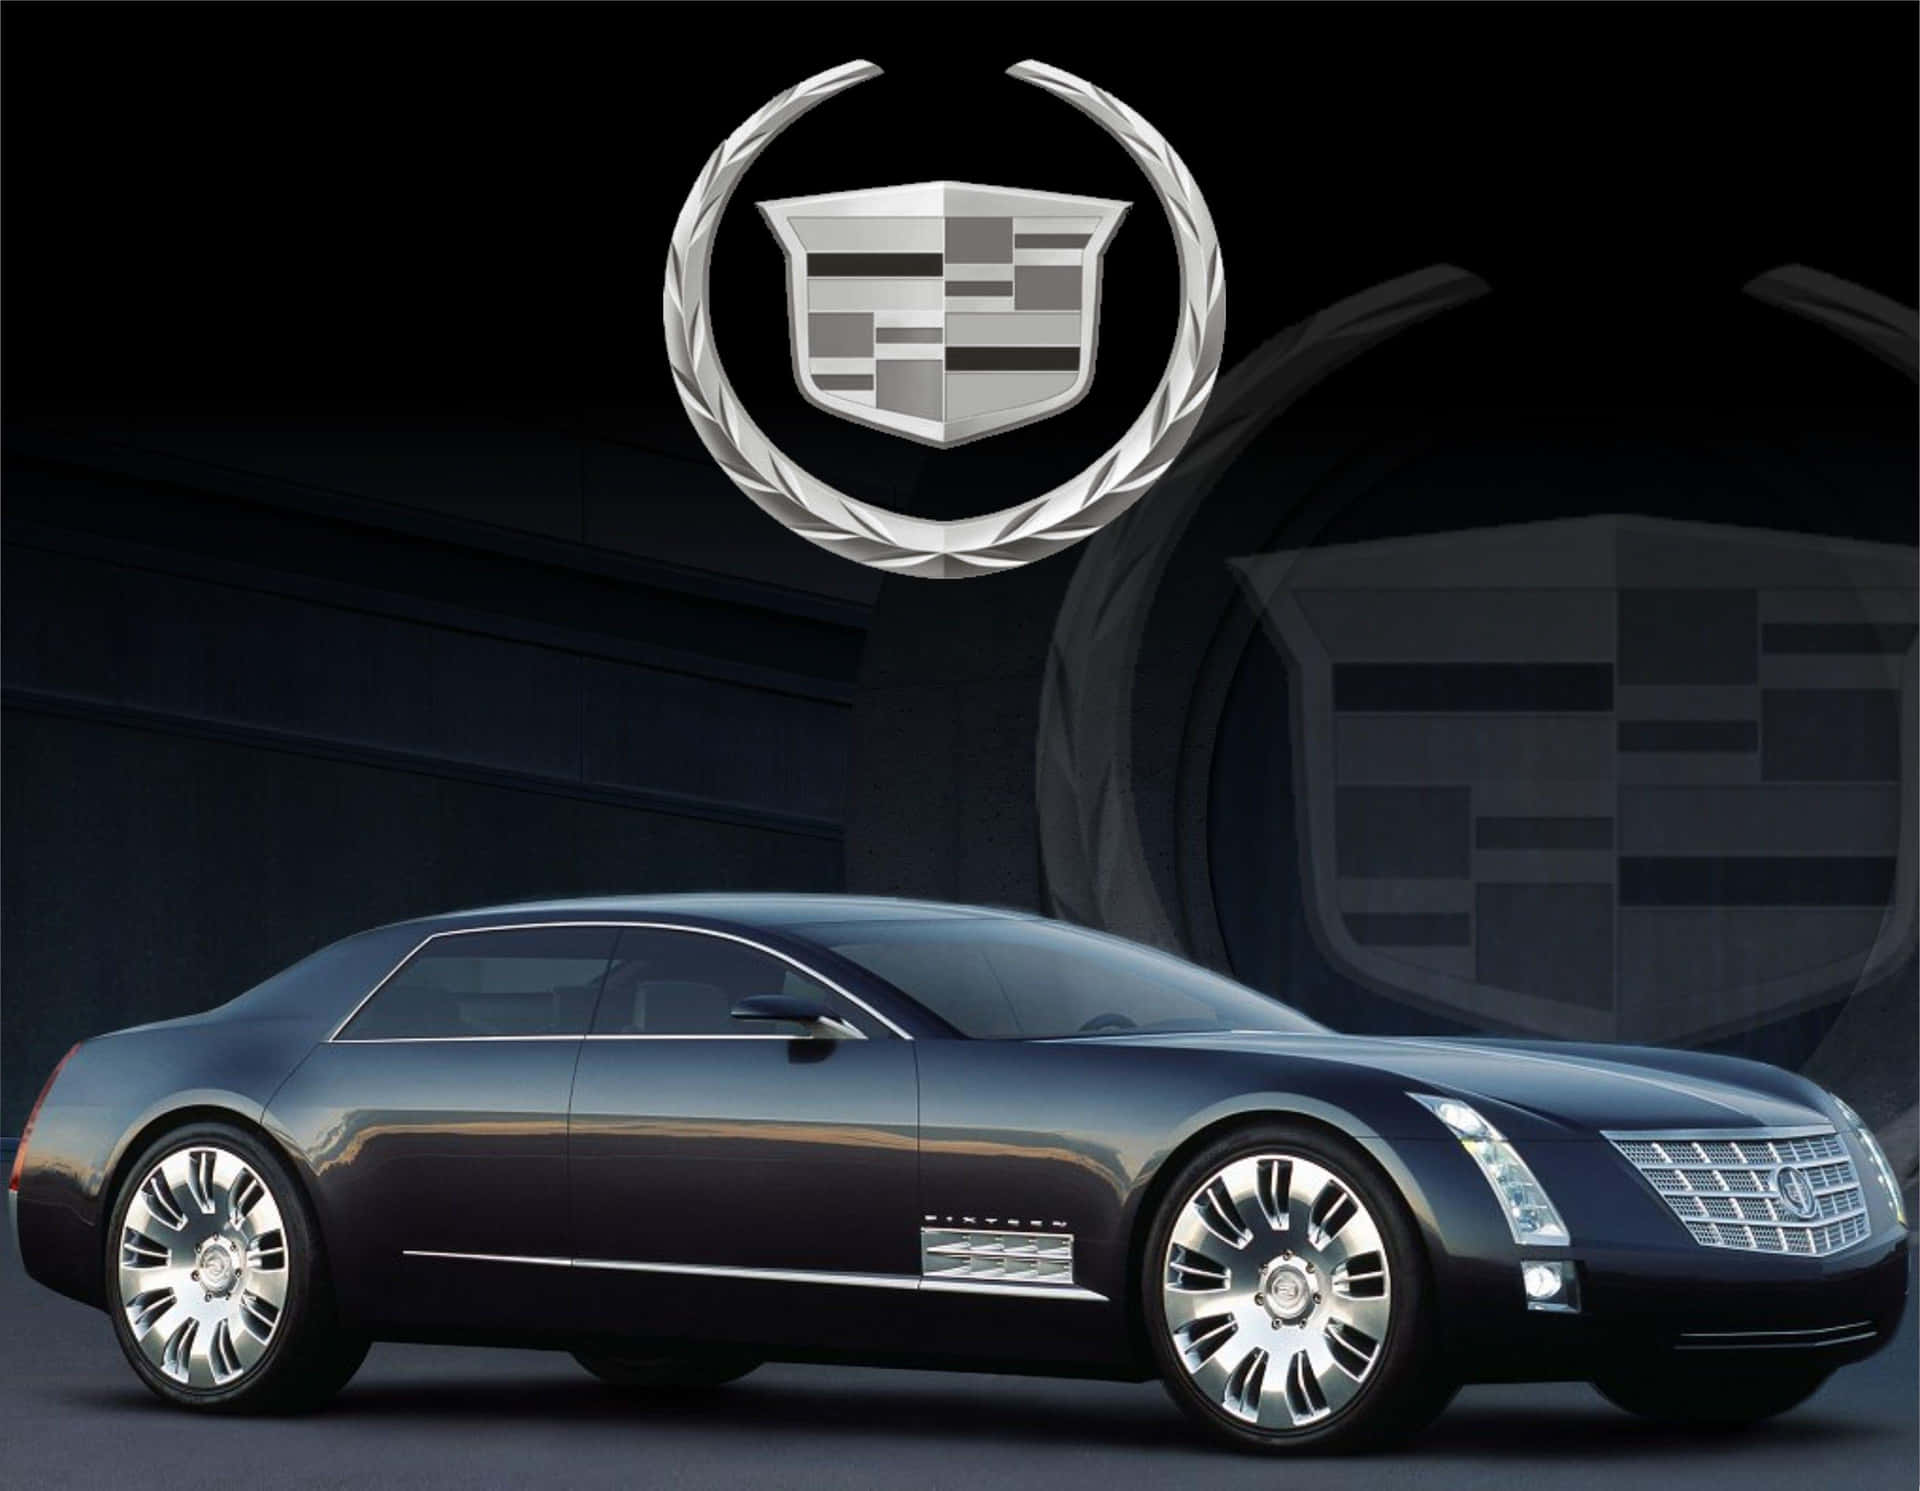 Nyaanserad,ikonisk Och Lyxig - Den Lockande Cadillac